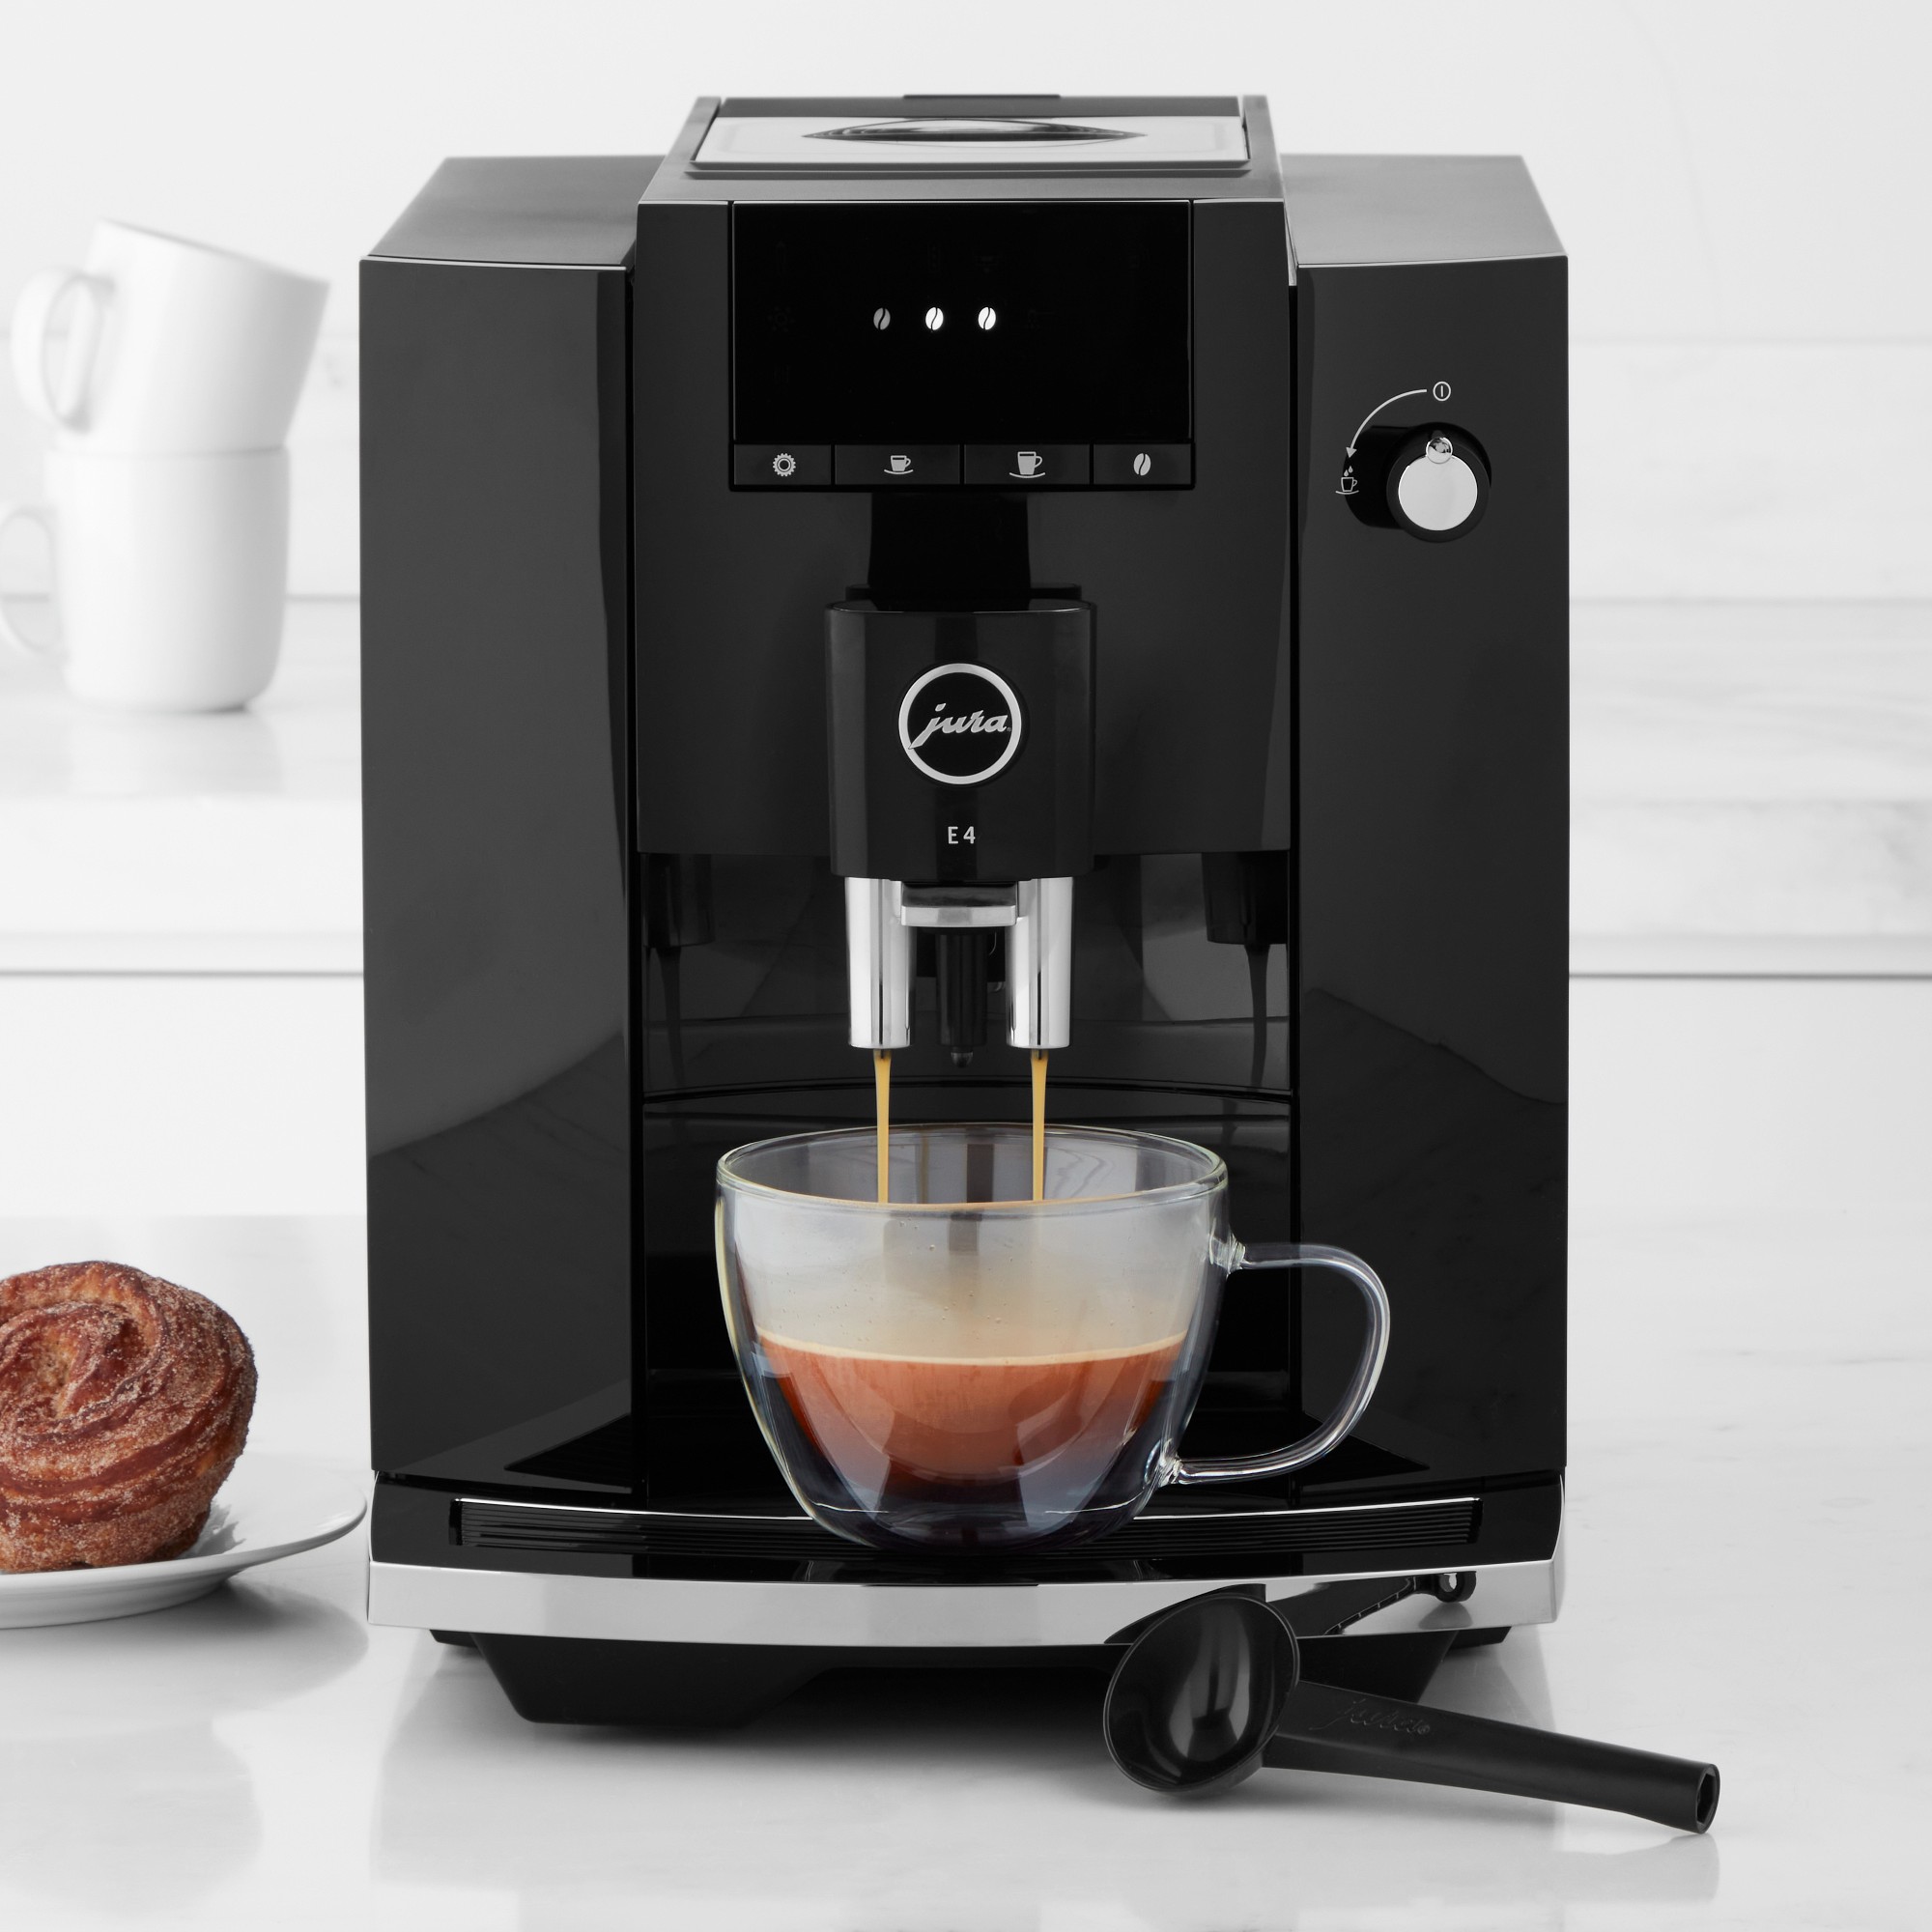 JURA E4 Fully Automatic Espresso Machine